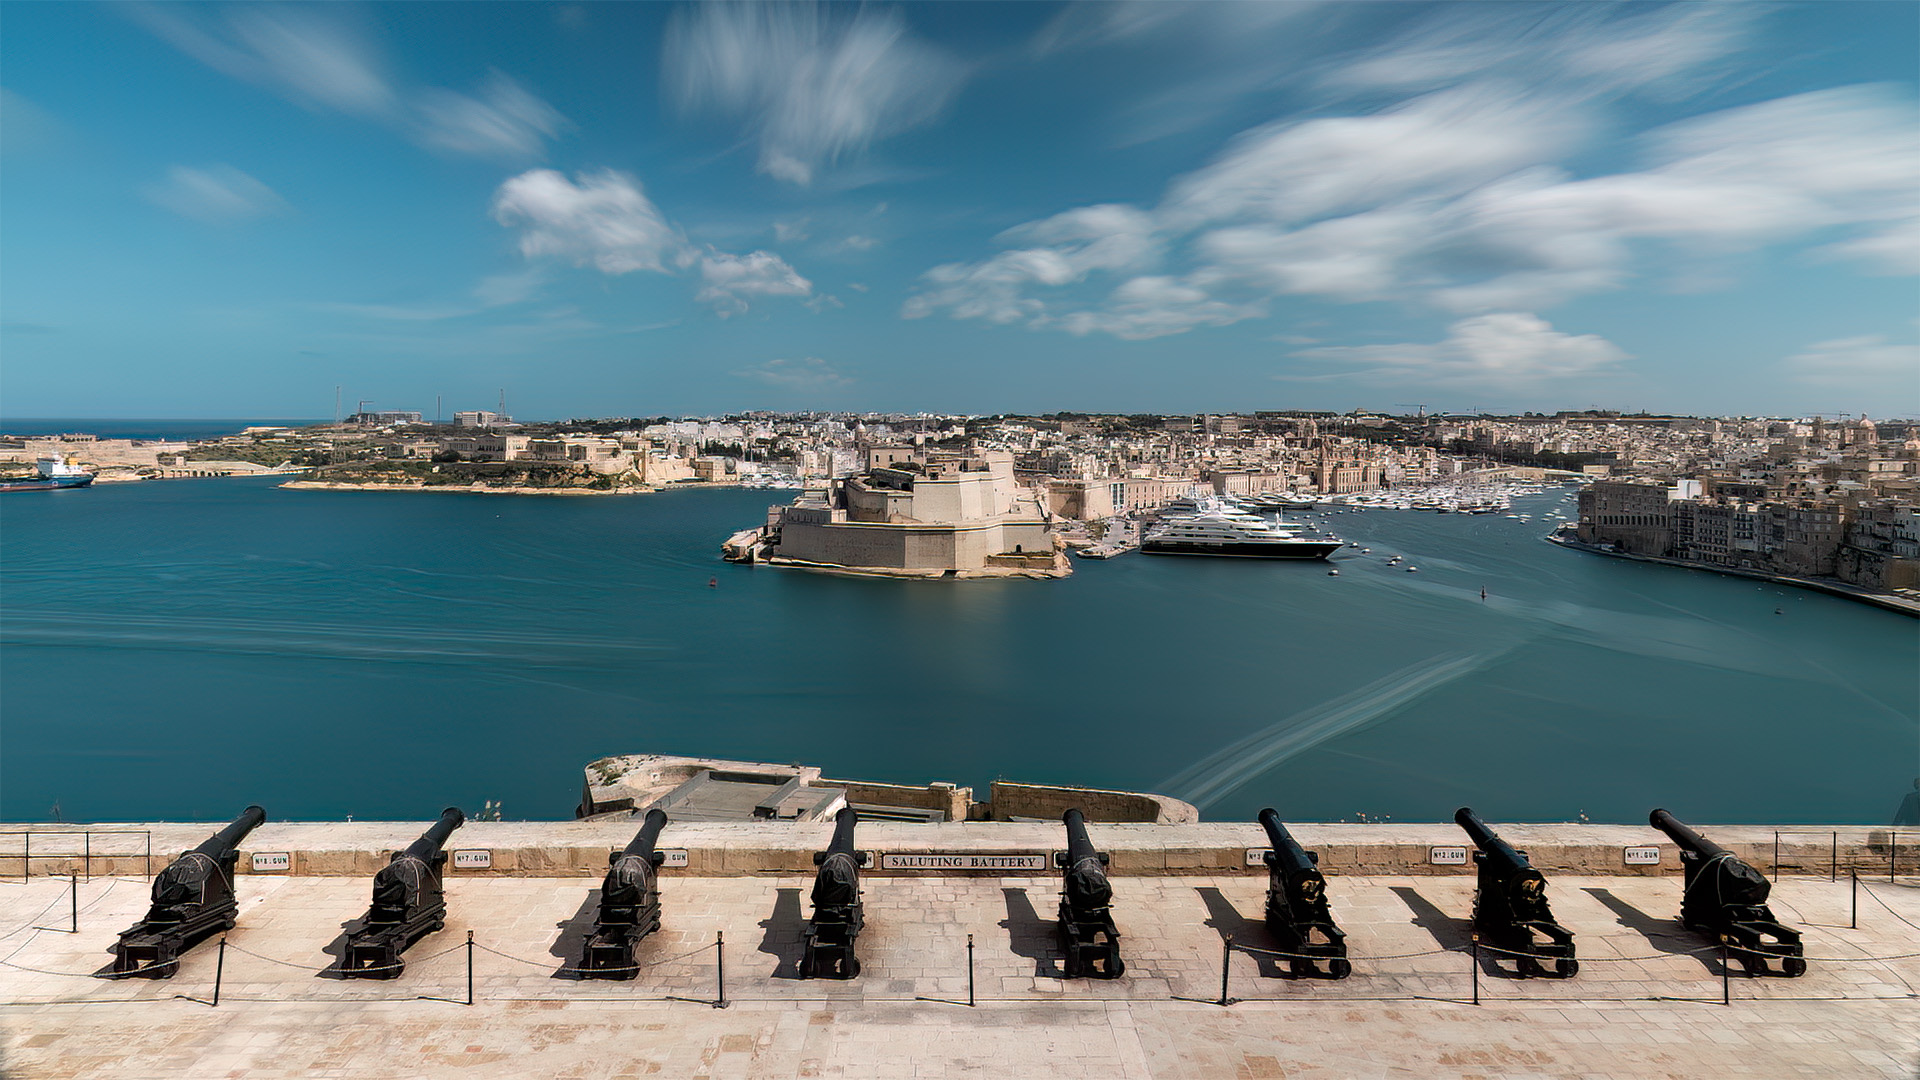 "Vallettas kraftvolle Kanonen: Die Saluting Battery als wichtiges Wahrzeichen Maltas"